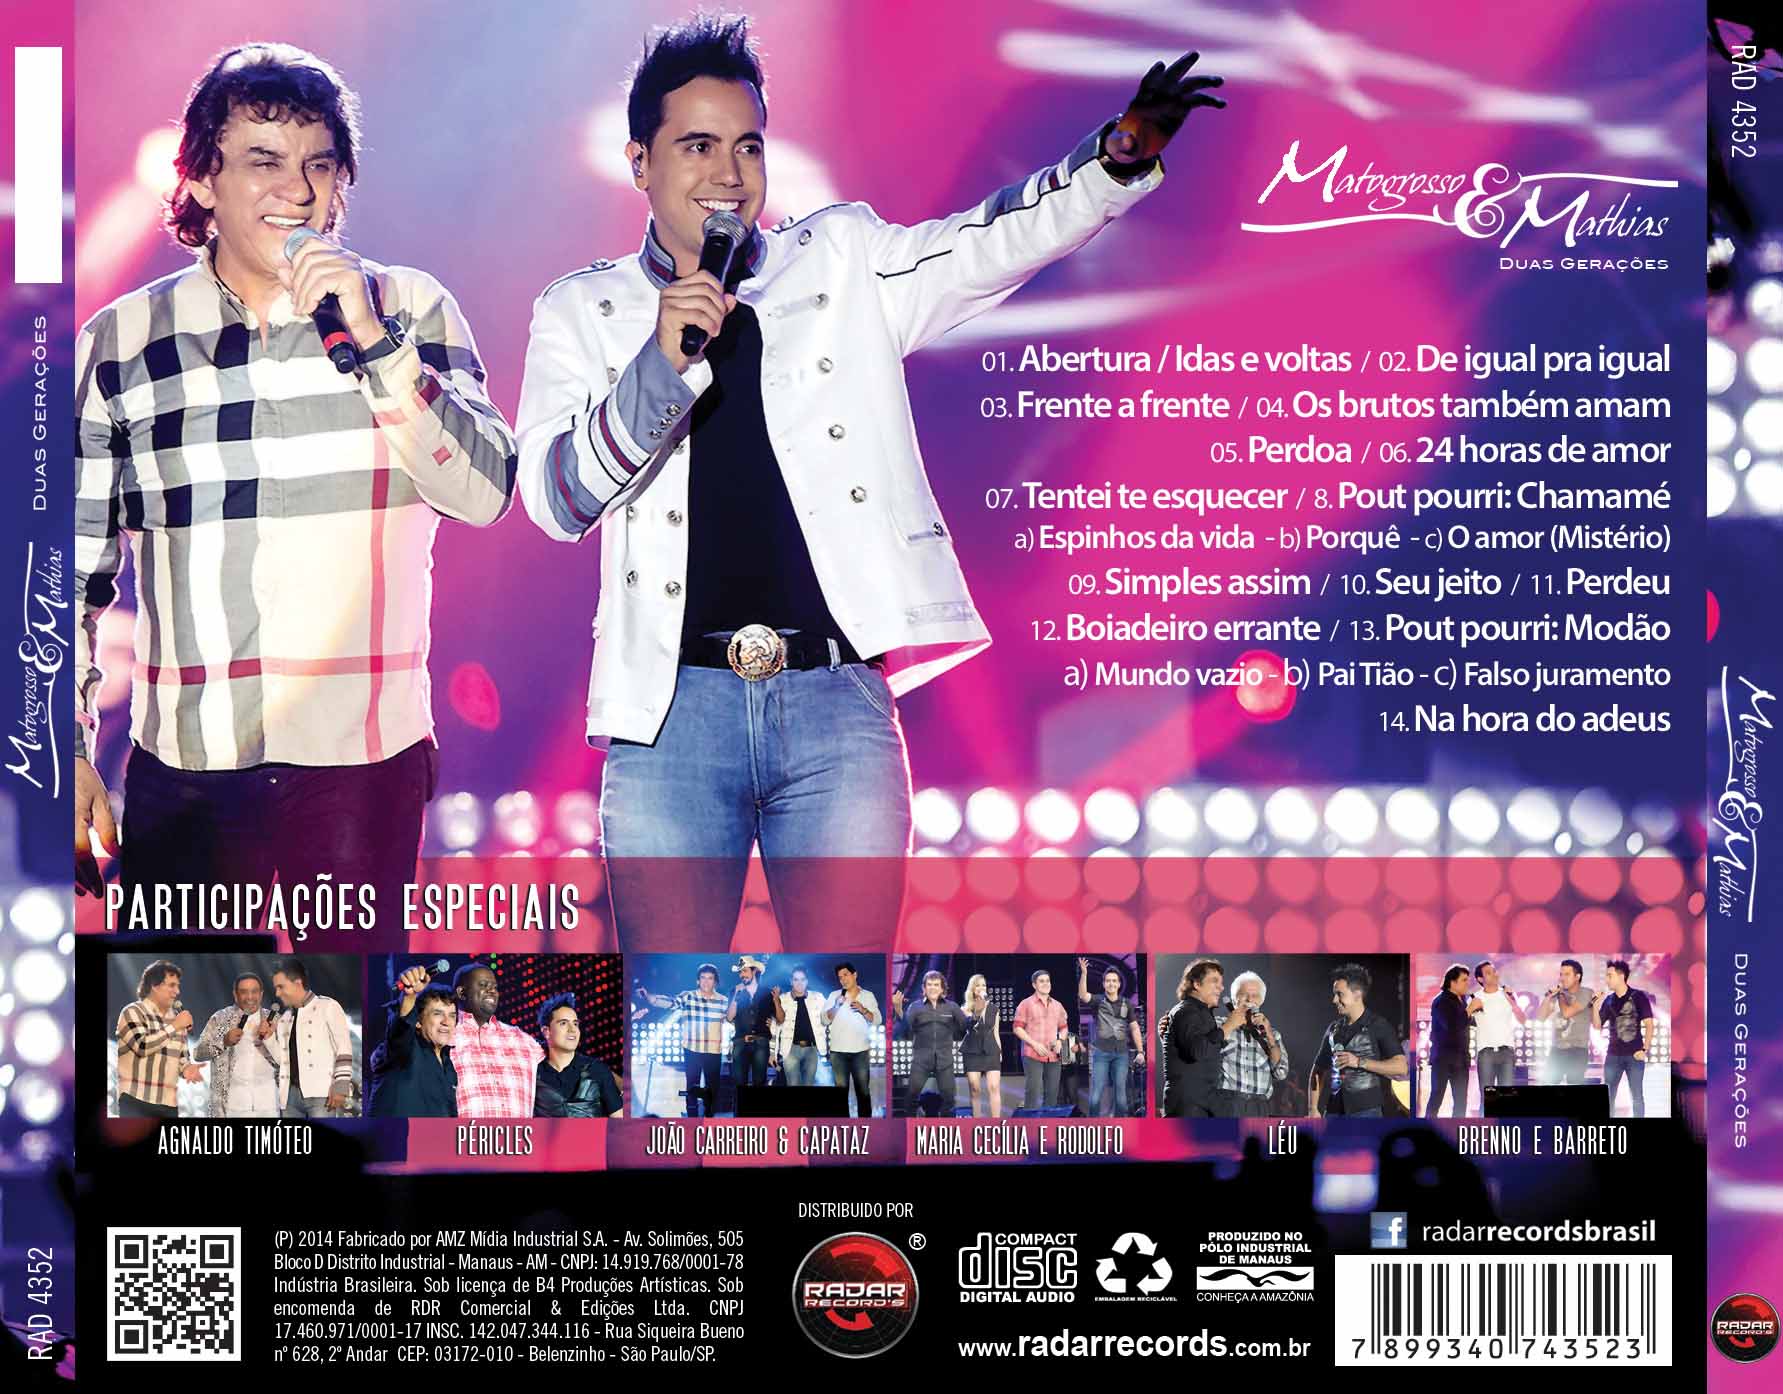 CD Matogrosso & Mathias - Duas Gerações (Ao Vivo)